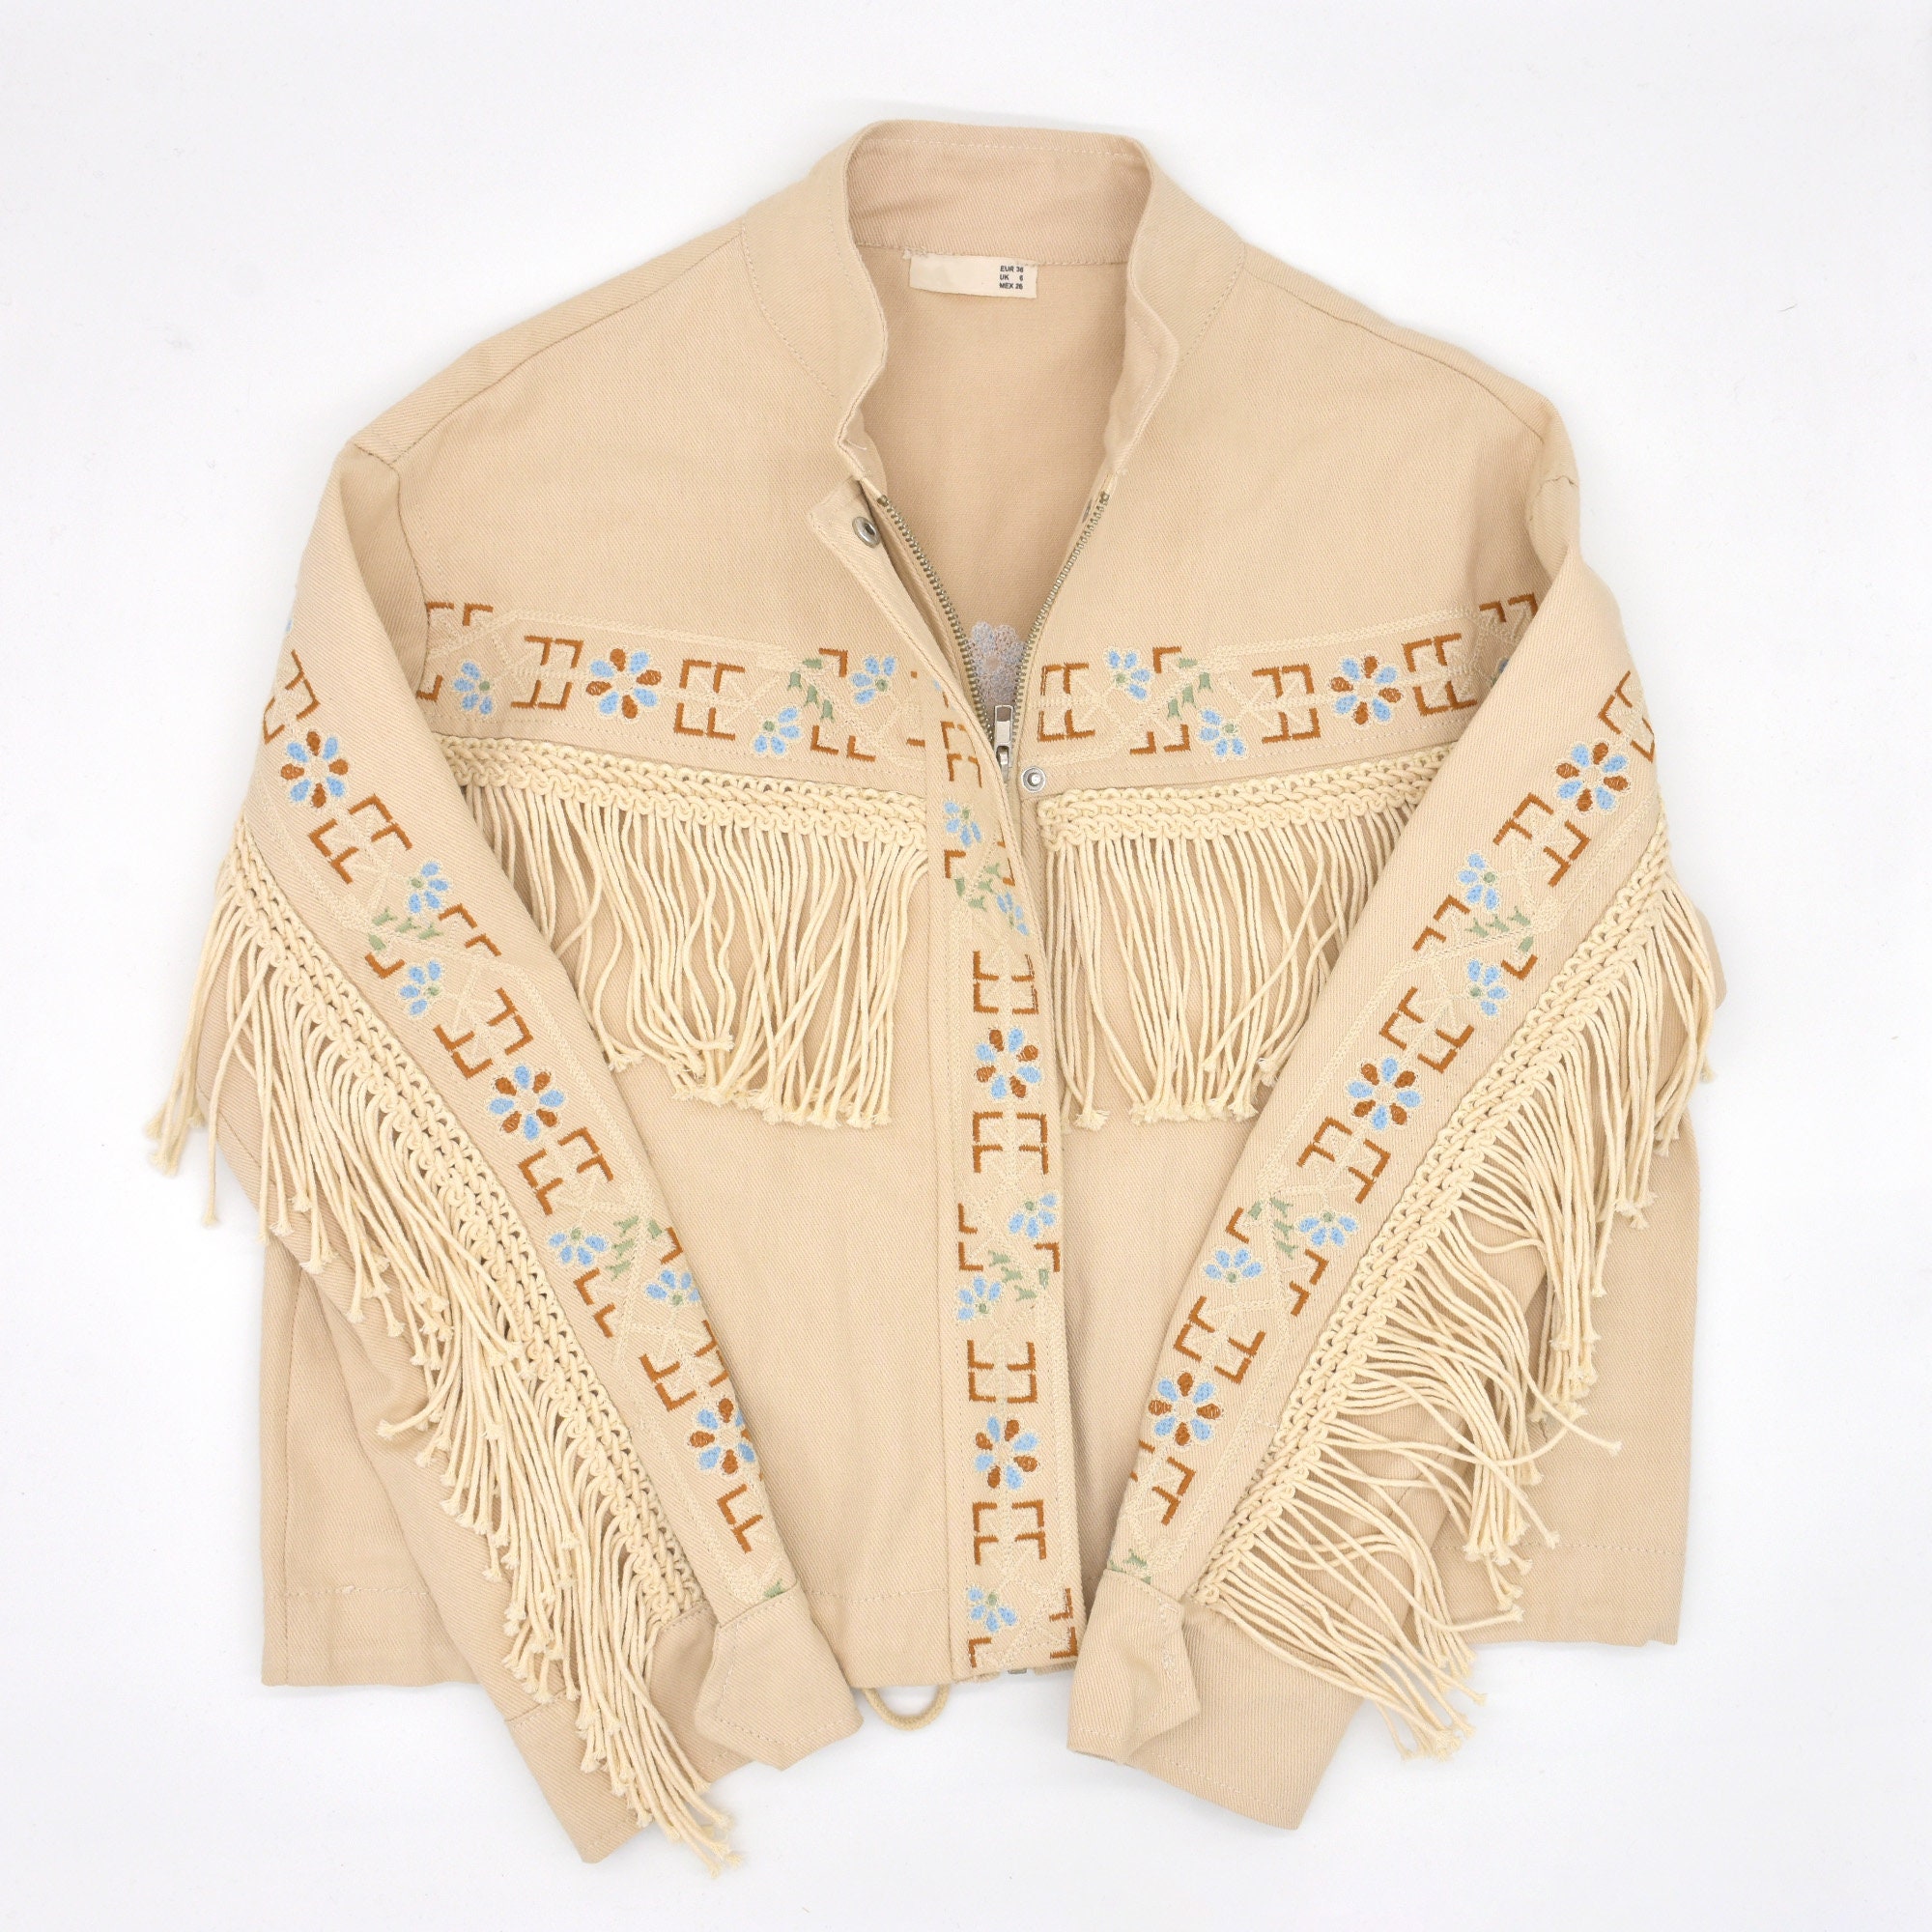 Embroidered Beige Denim Jacket, Western Style Fringe Jacket for Her ...